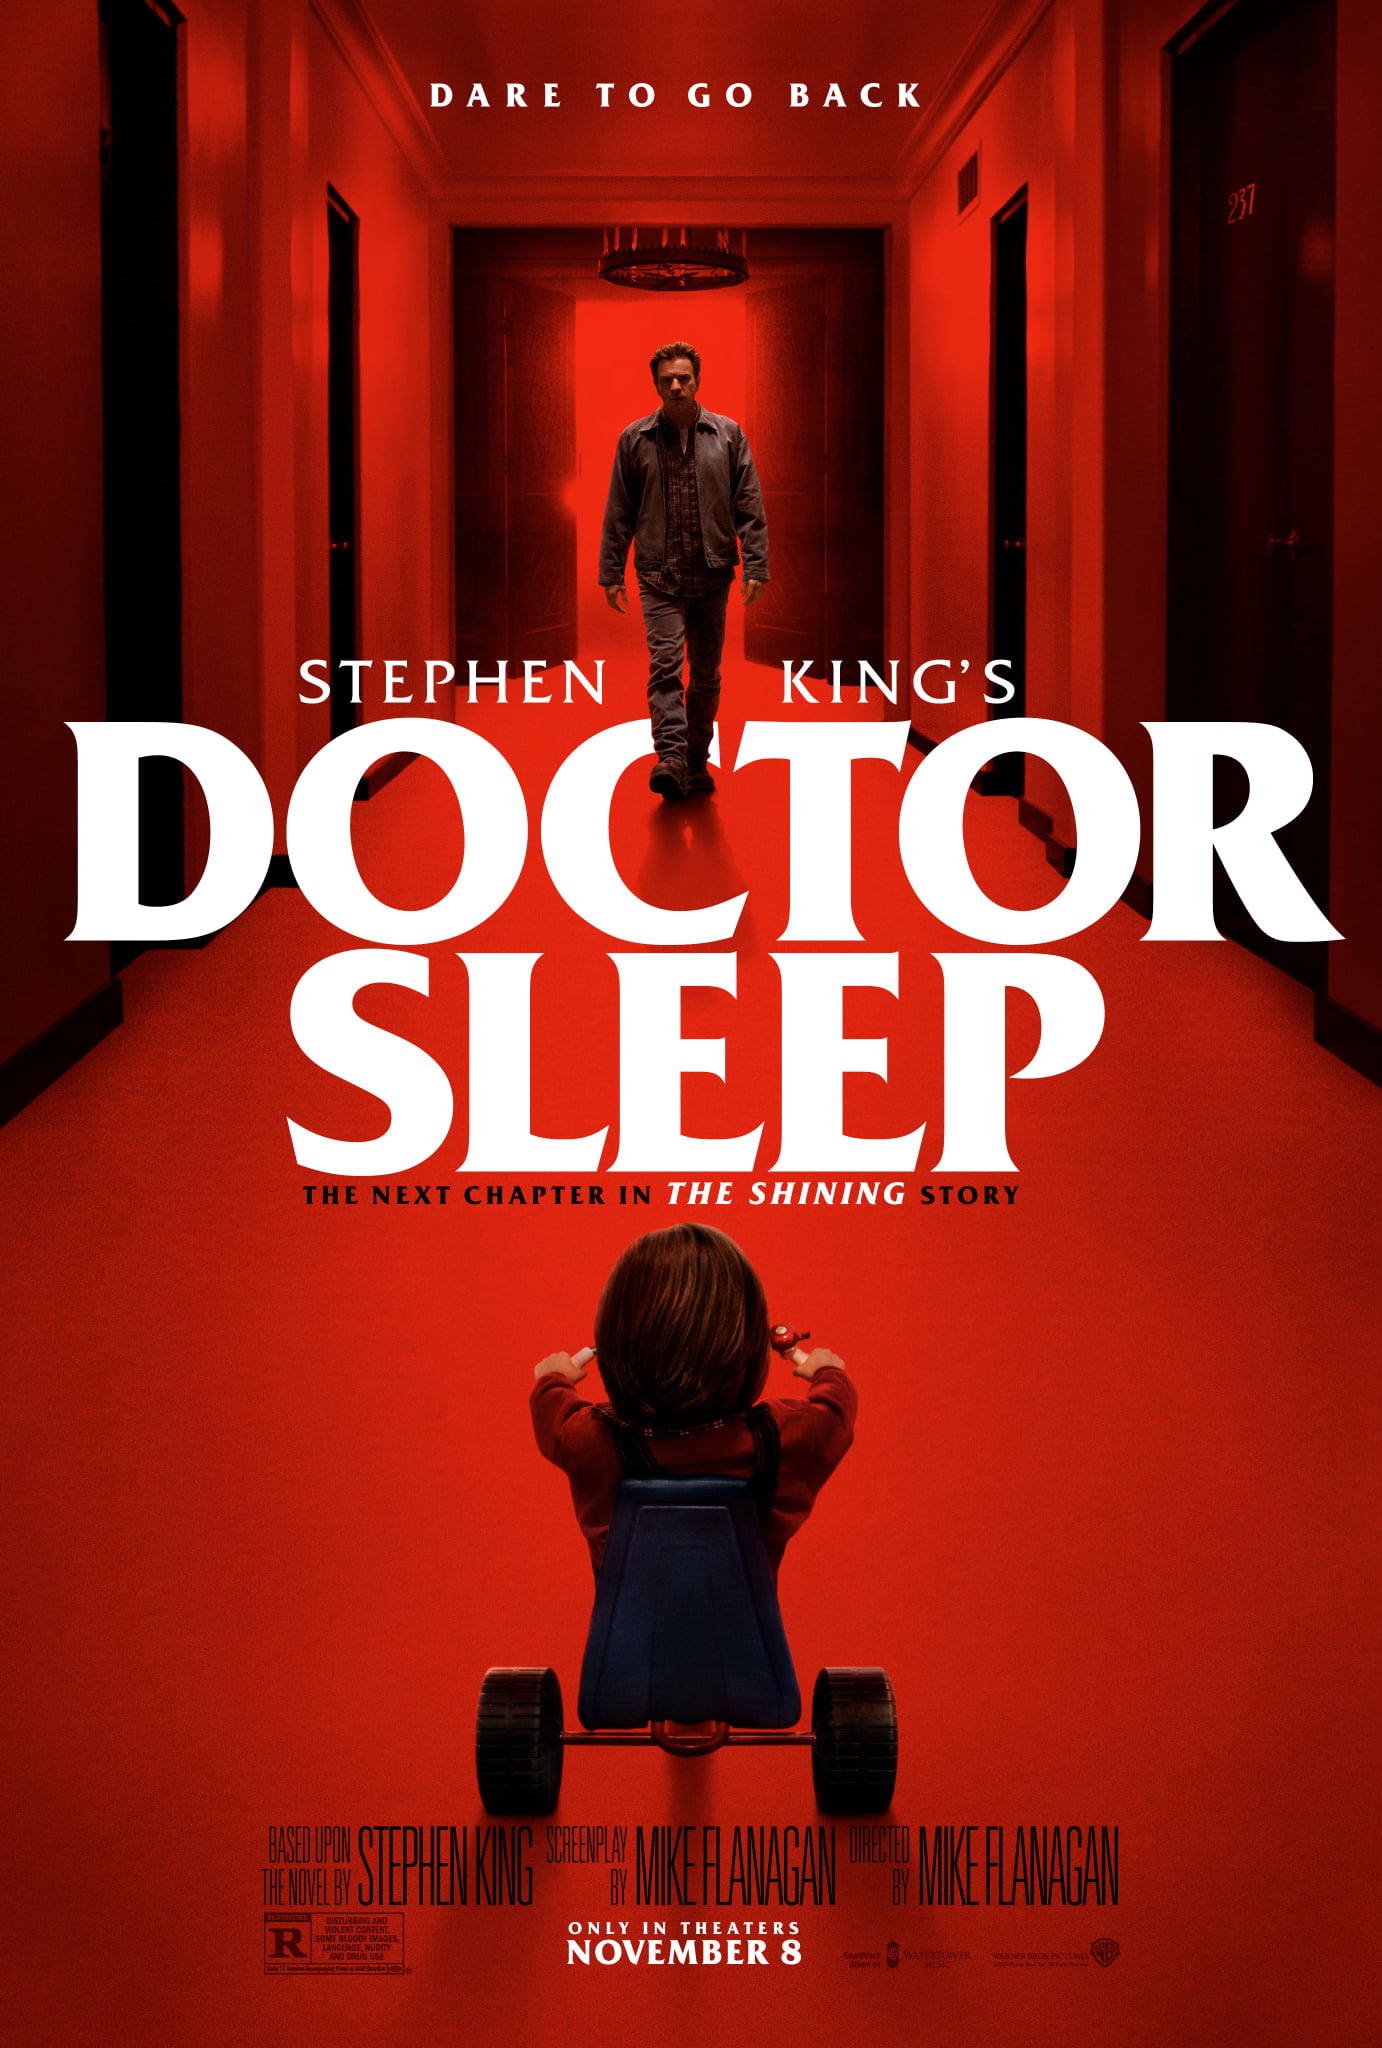 ดูหนังออนไลน์ฟรี Doctor Sleep (2019) ลางนรก